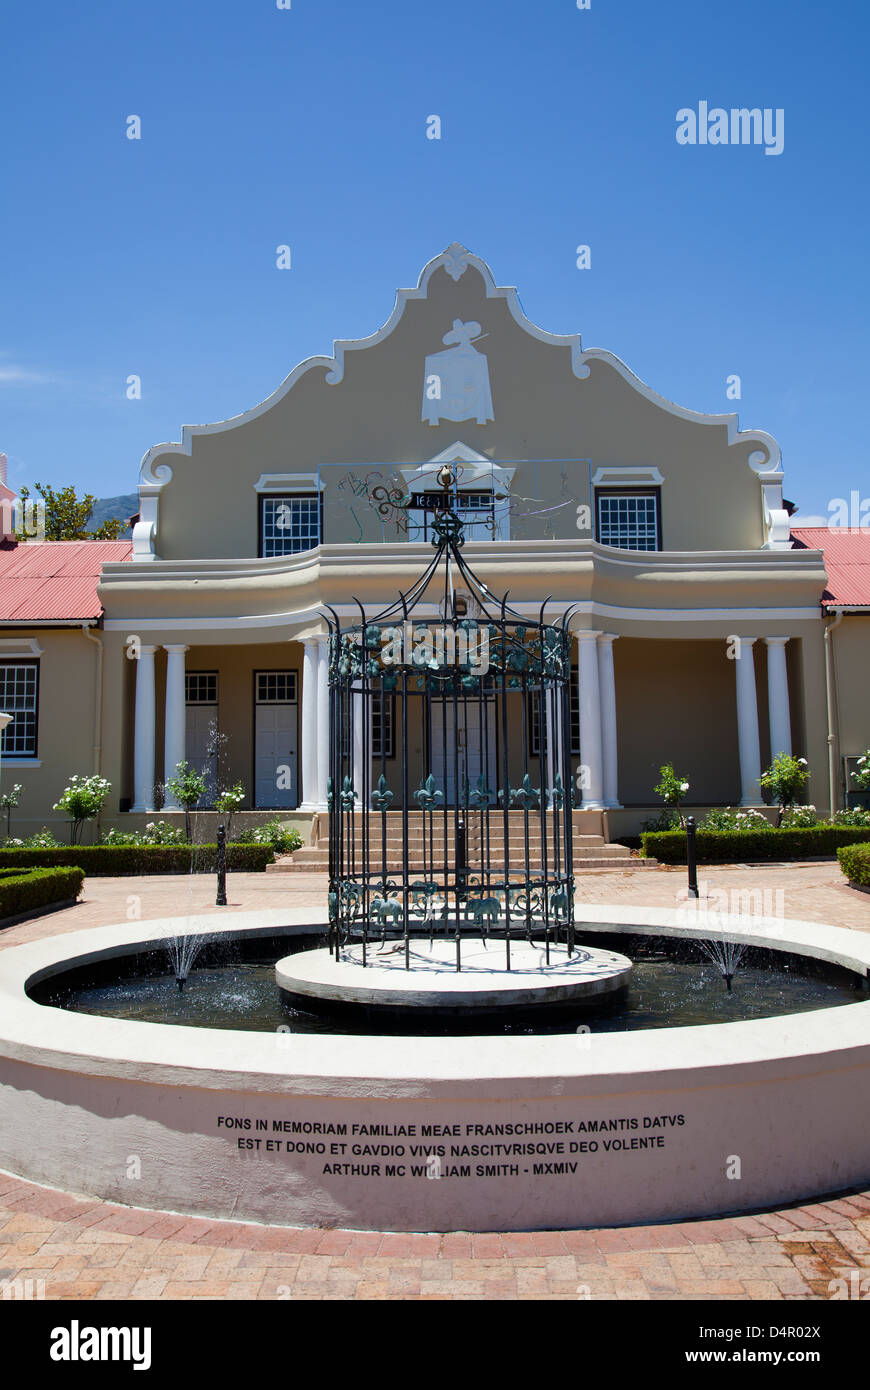 Franschhoek Rathaus im Kap-holländischen Stil Architektur - Western Cape - Südafrika Stockfoto